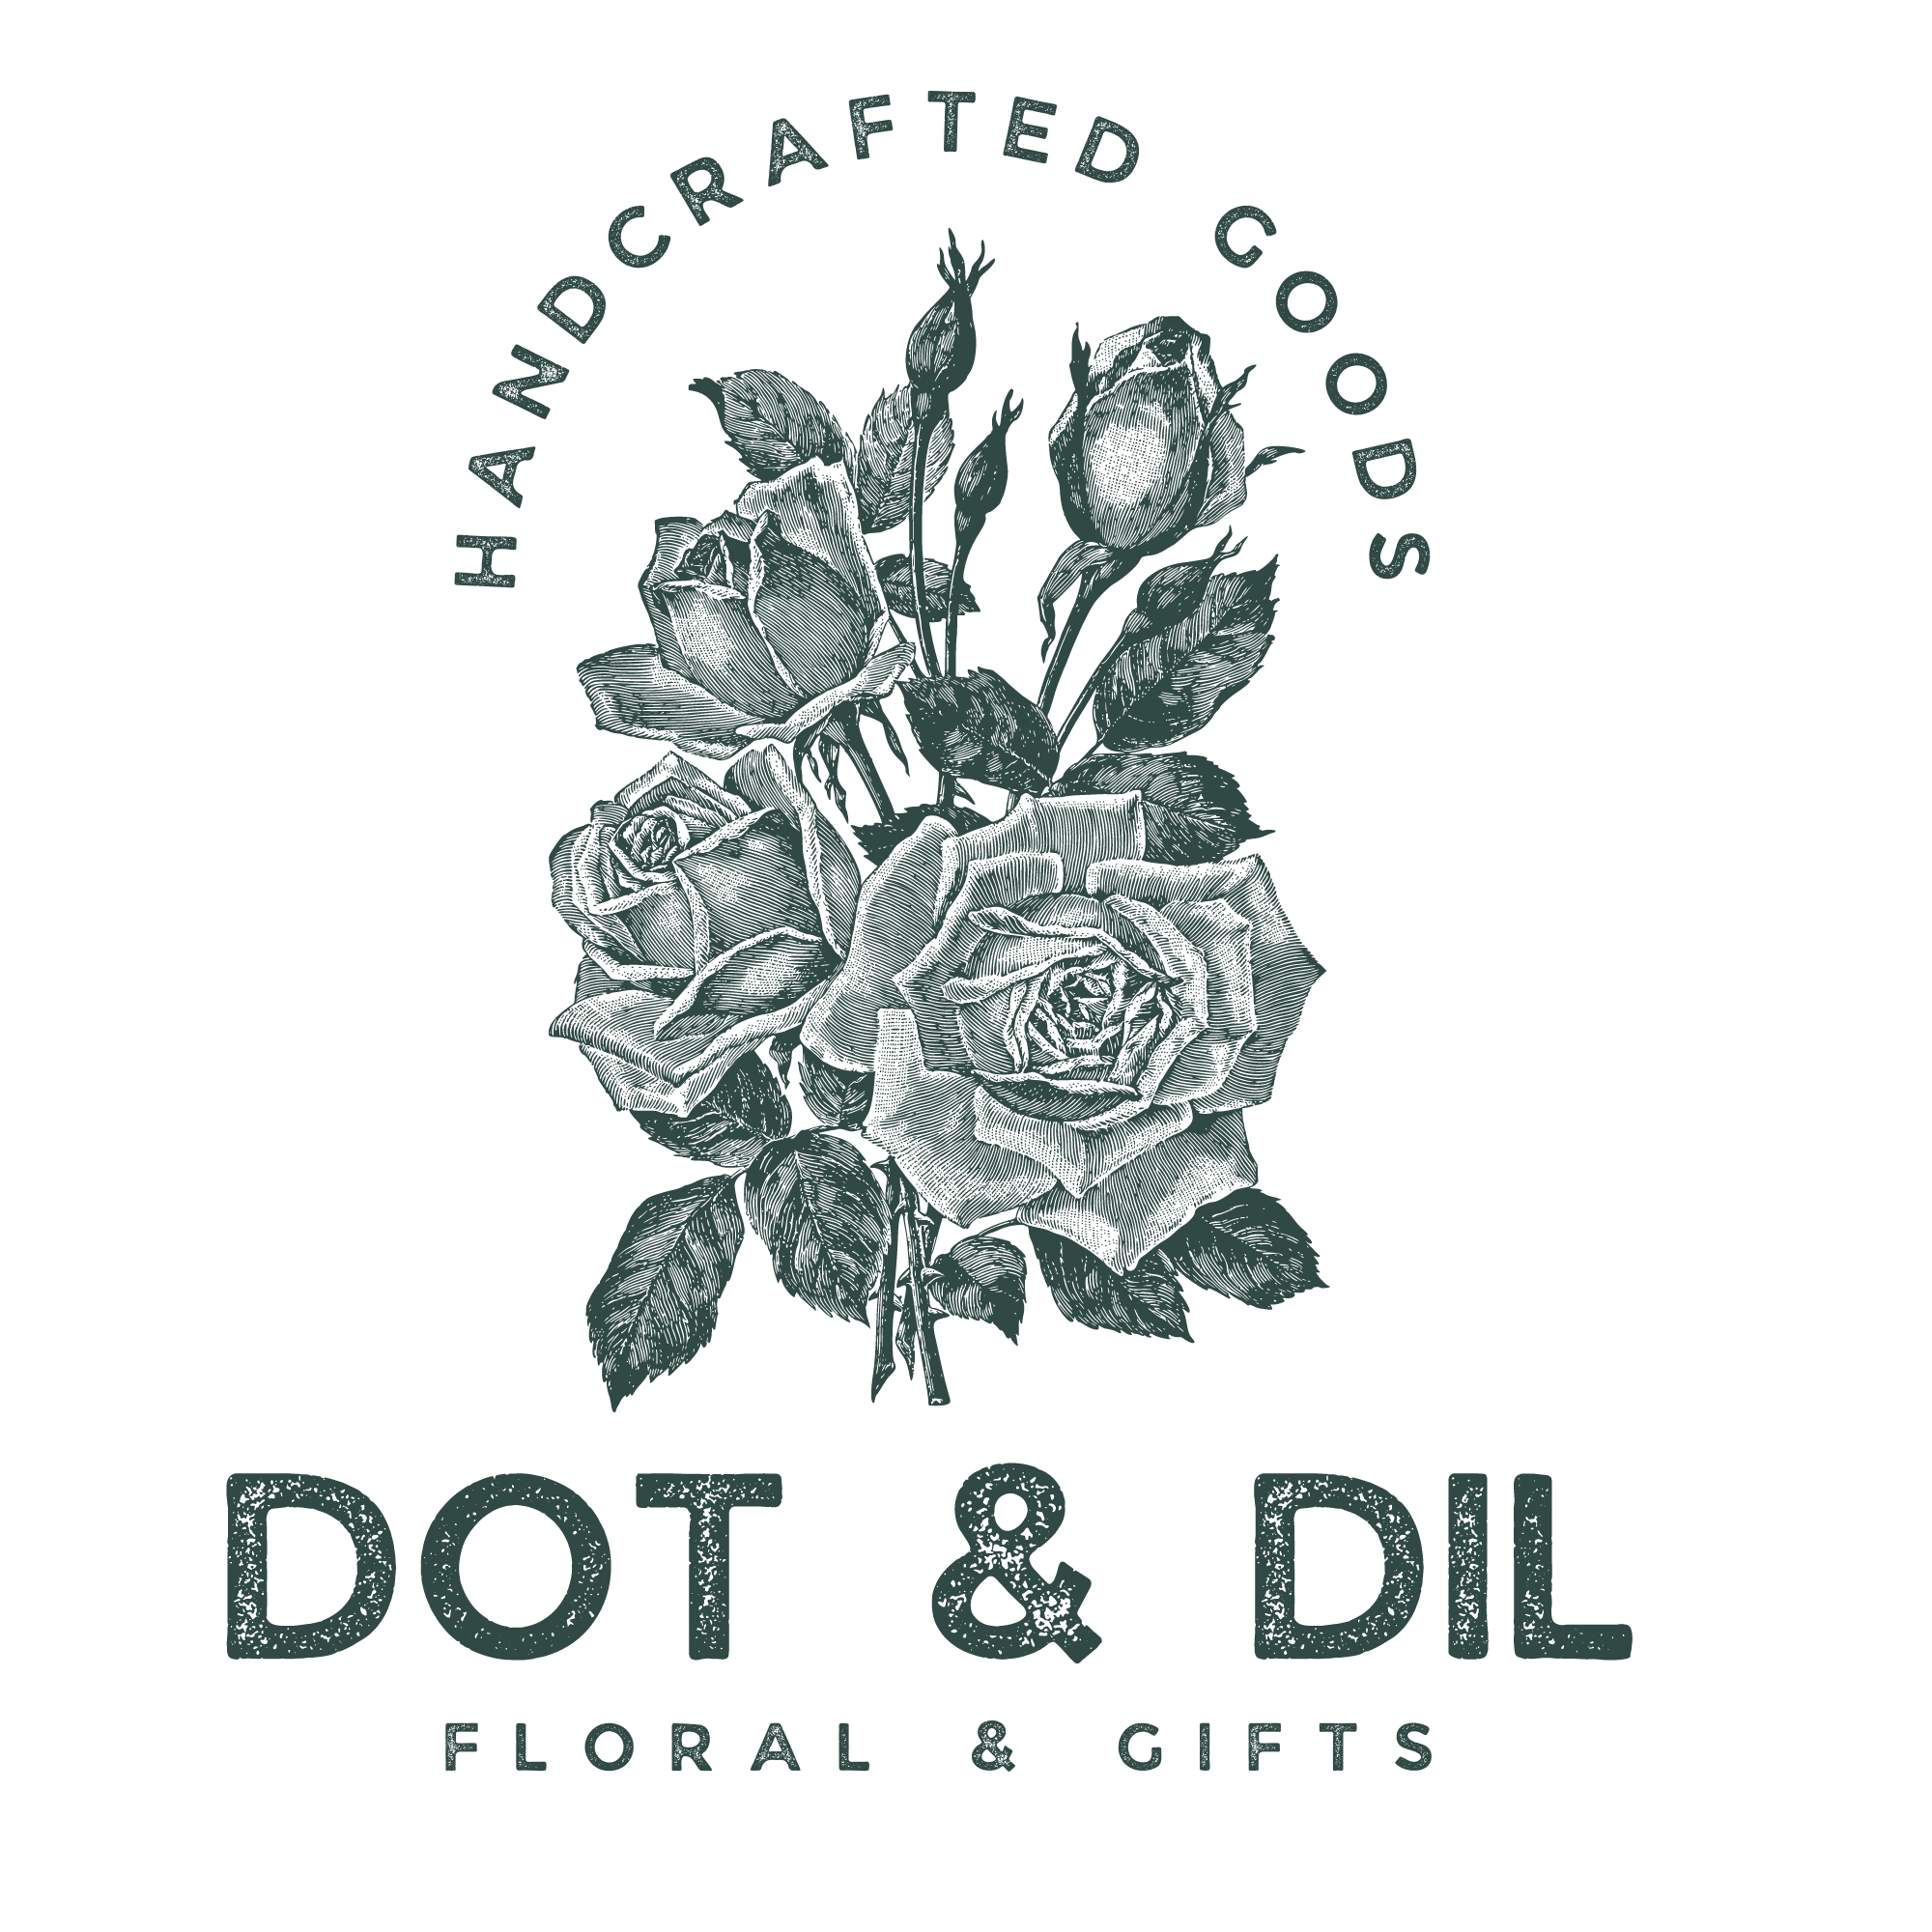 Dot & Dil